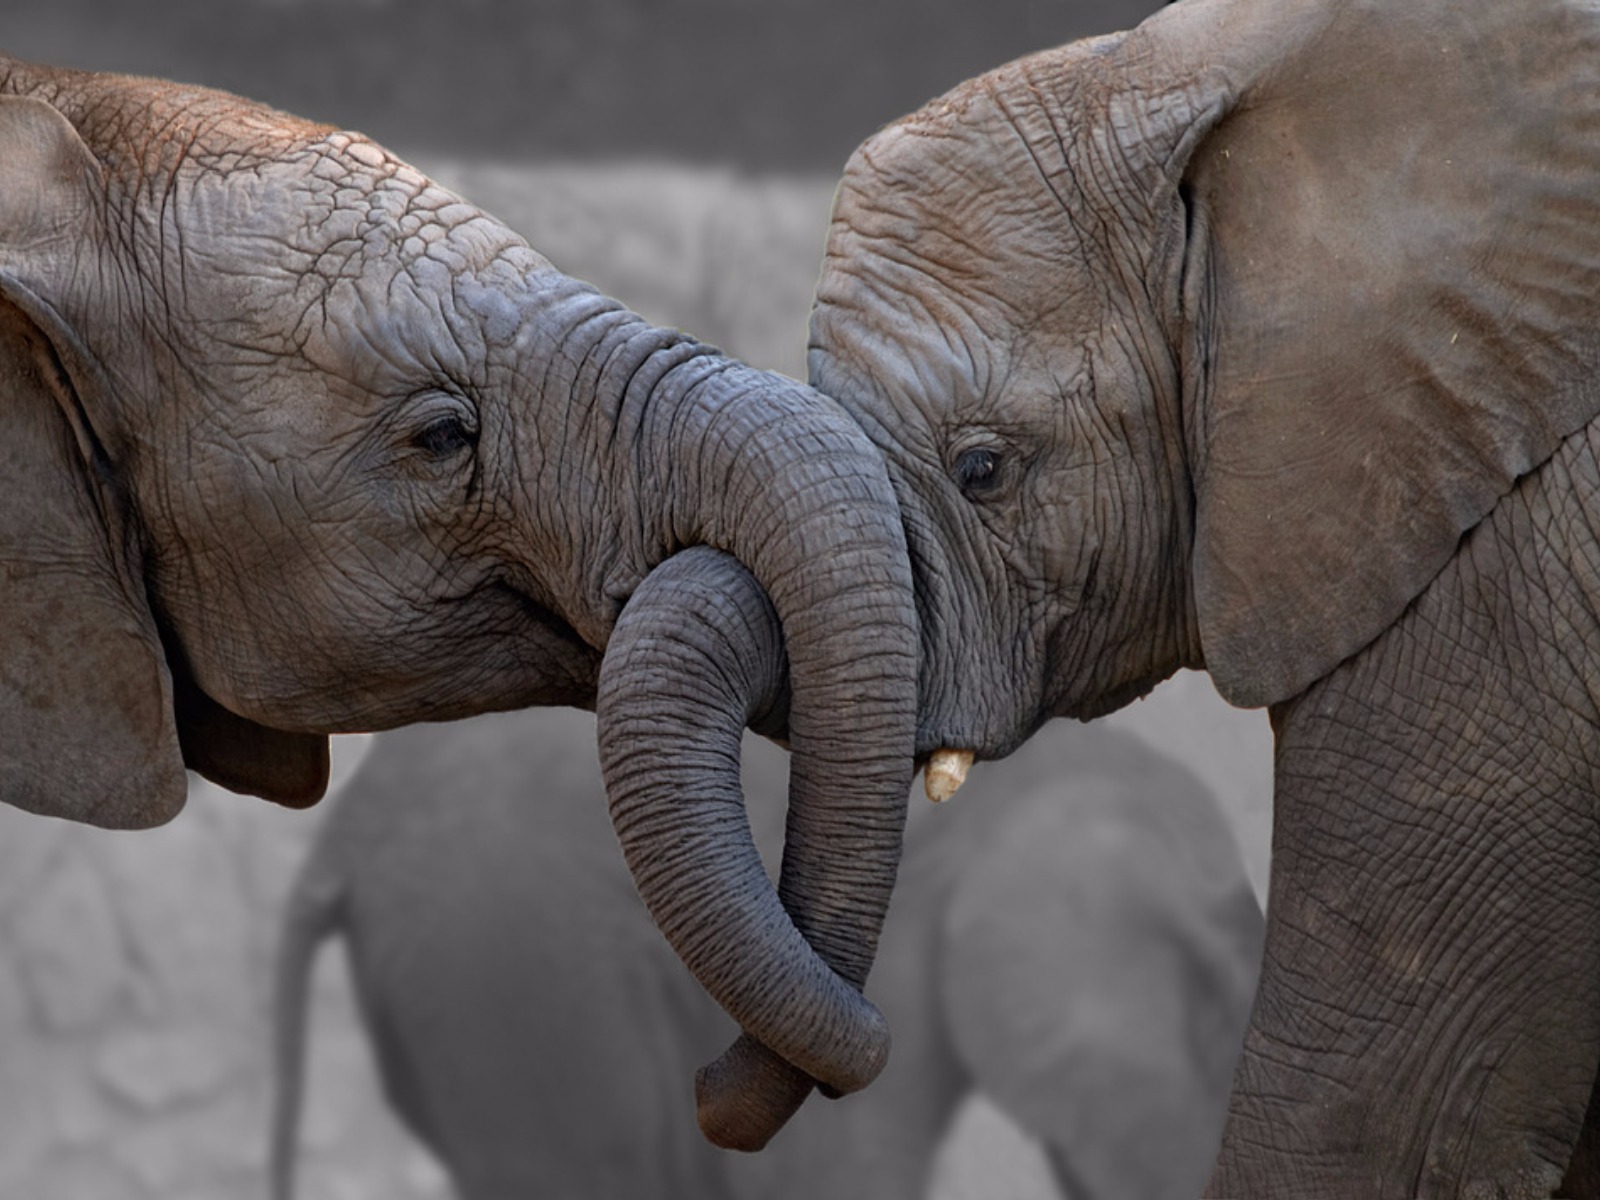 Скачать обои бесплатно Животные, Любовь, Слоны, Пара, Африканский Слон картинка на рабочий стол ПК